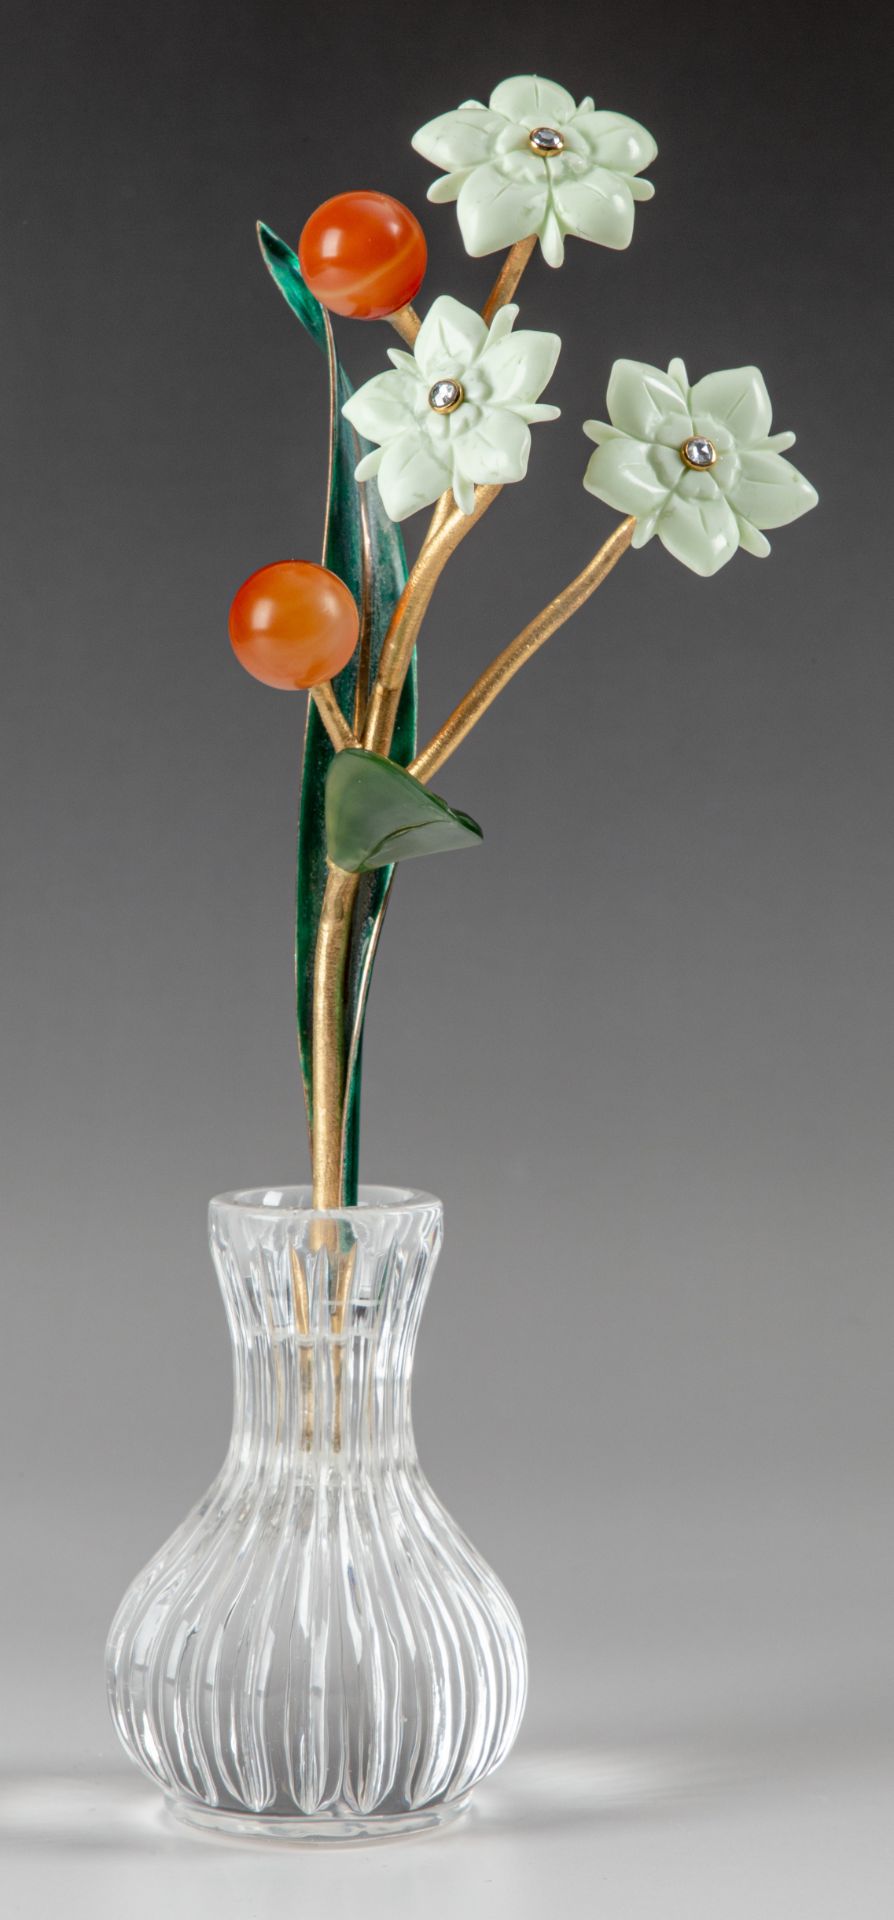 Vase mit Sindrablüten und -beeren - Kreation von Manfred Wild